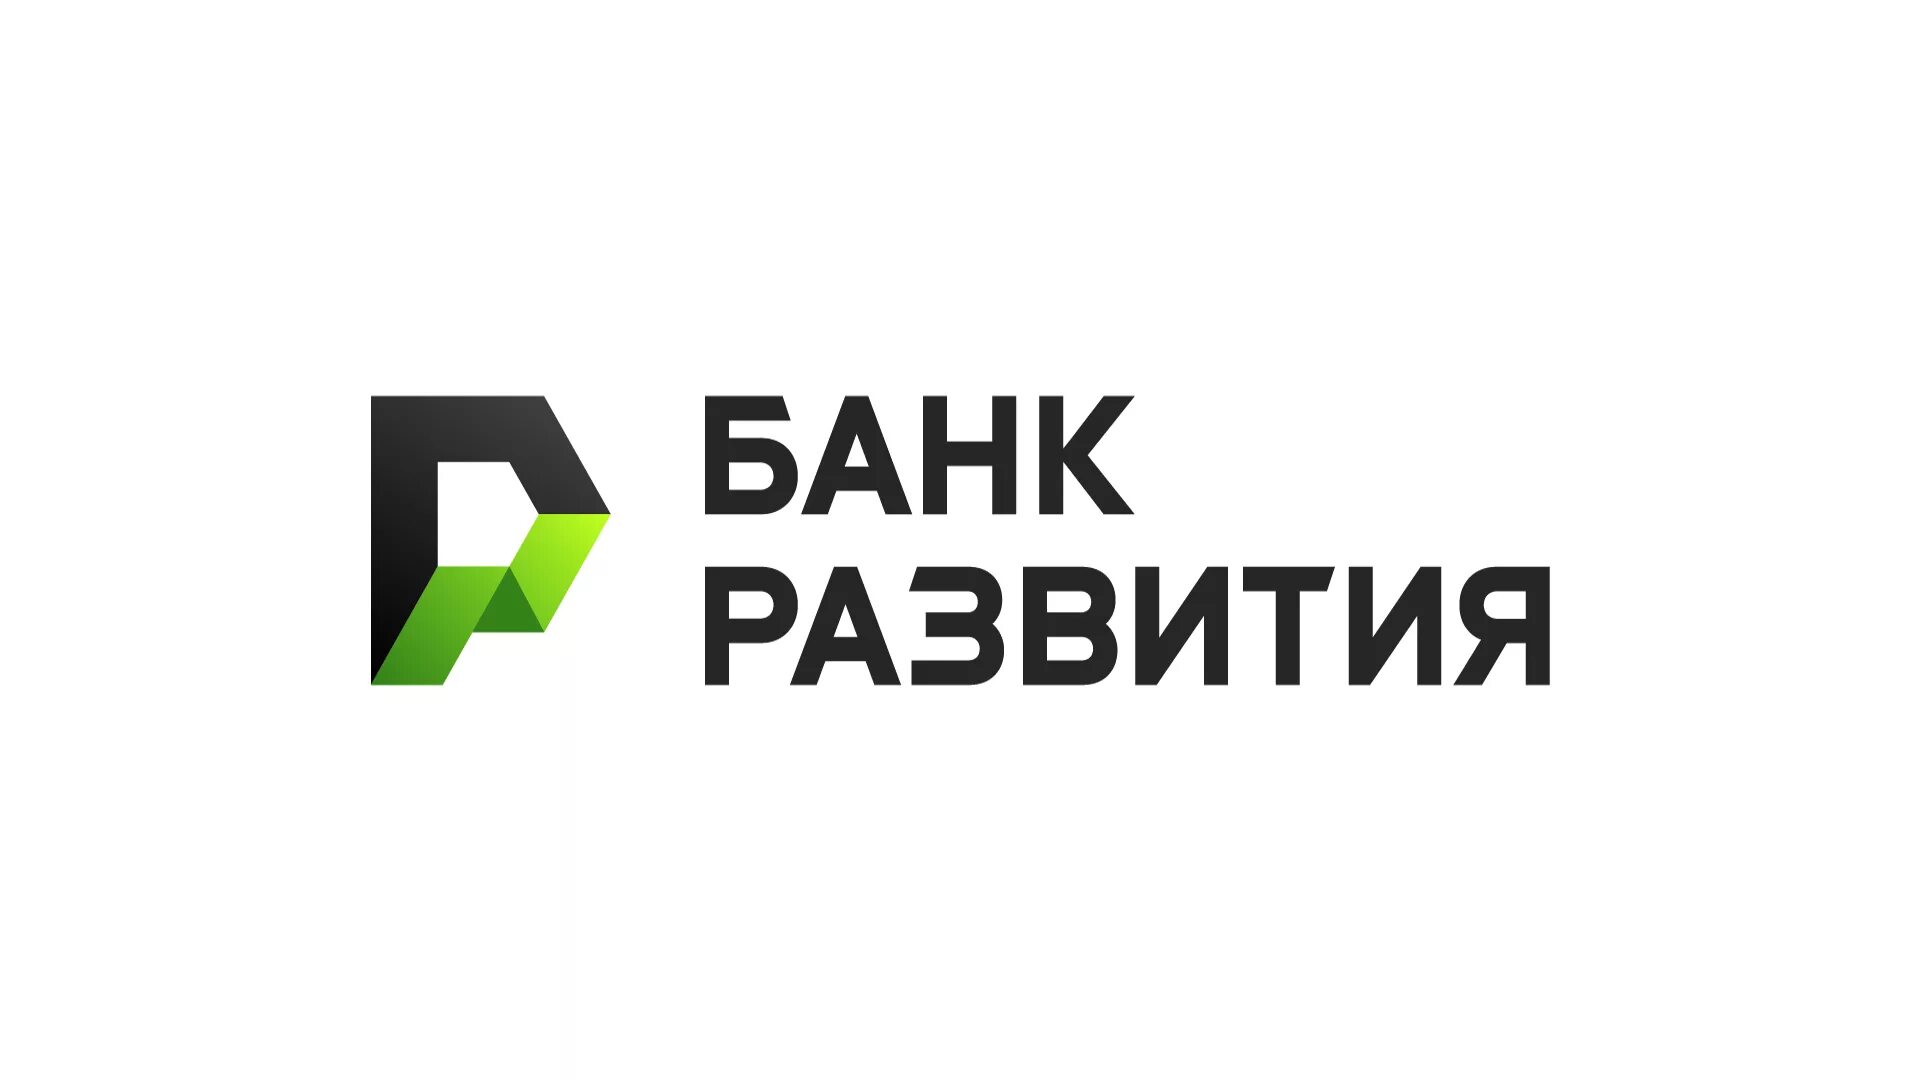 Банк развития беларуси. Банк развития. Банк развития Беларусь. Банки развития. Логотипы белорусских банков.